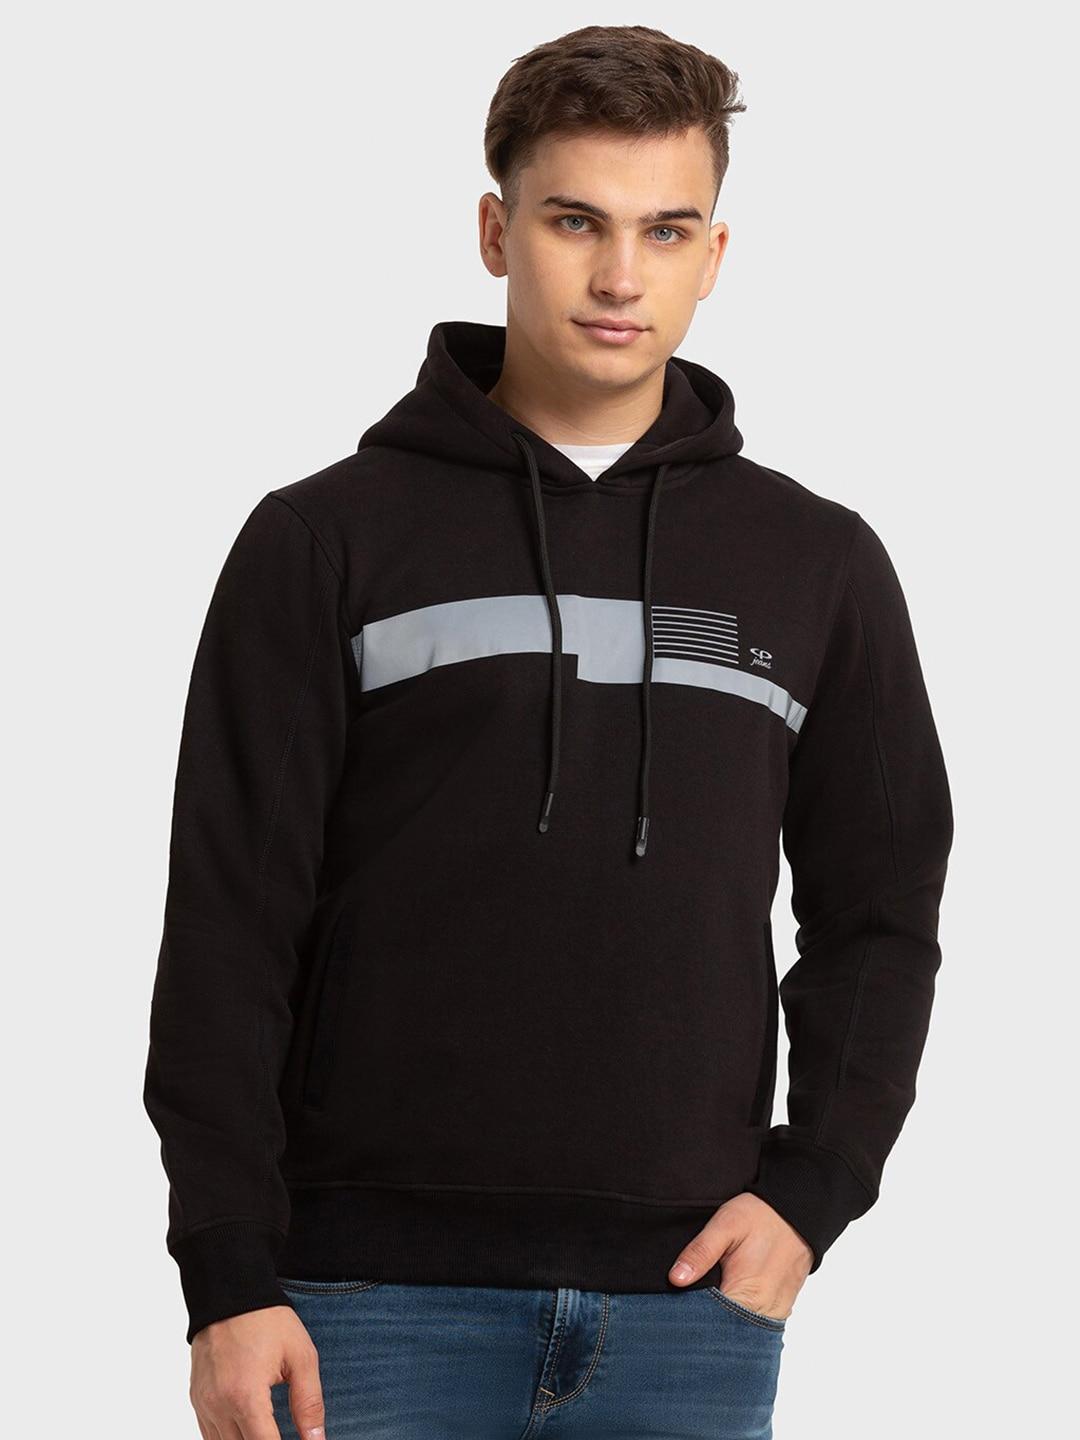 colorplus-men-hooded-pullover-sweatshirt